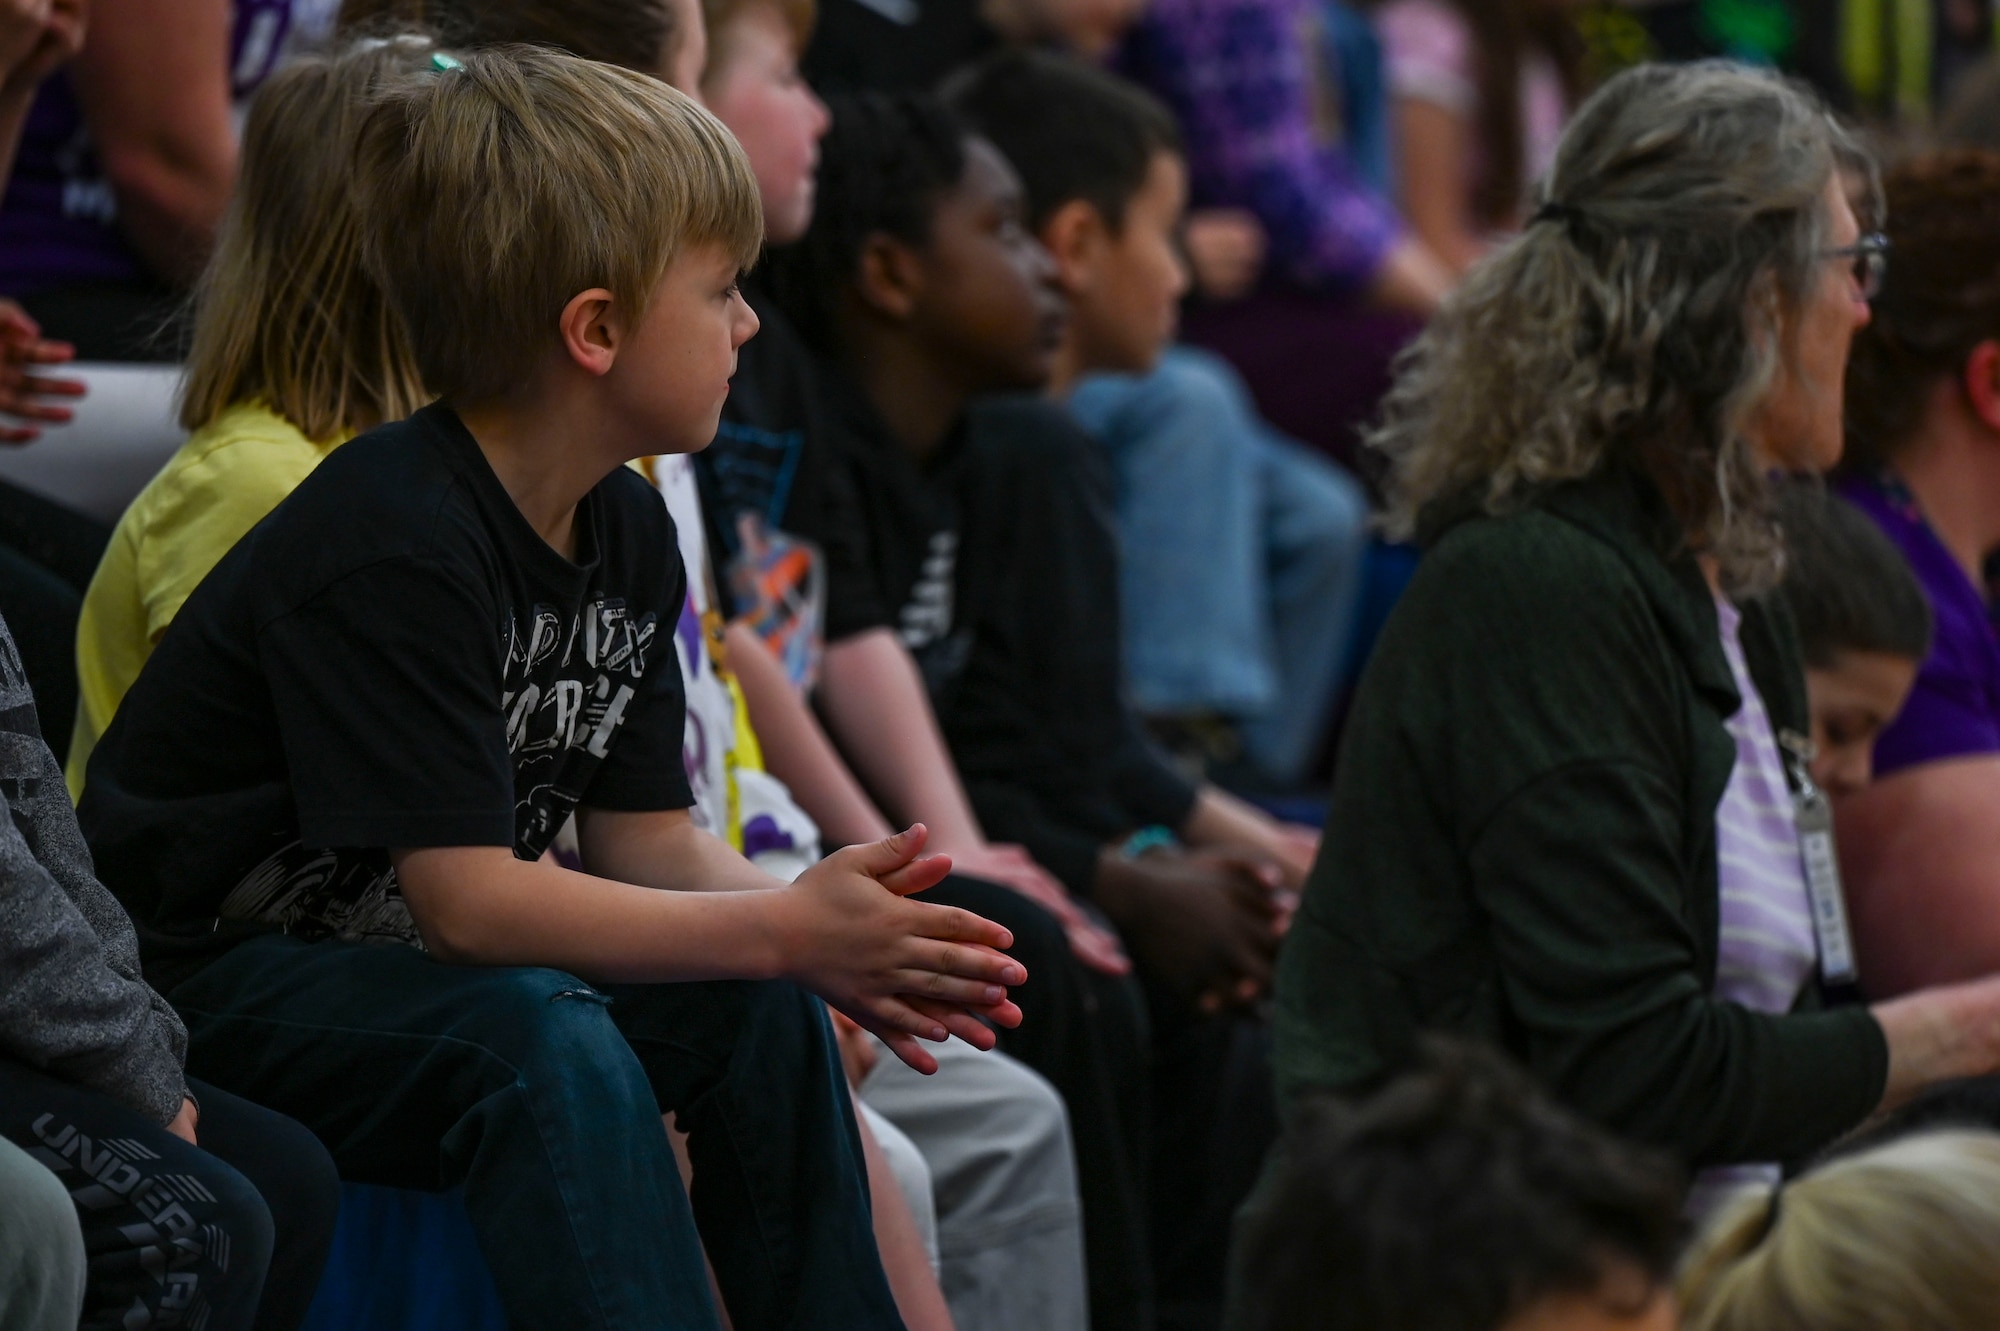 Children listen to a speaker in an audience.